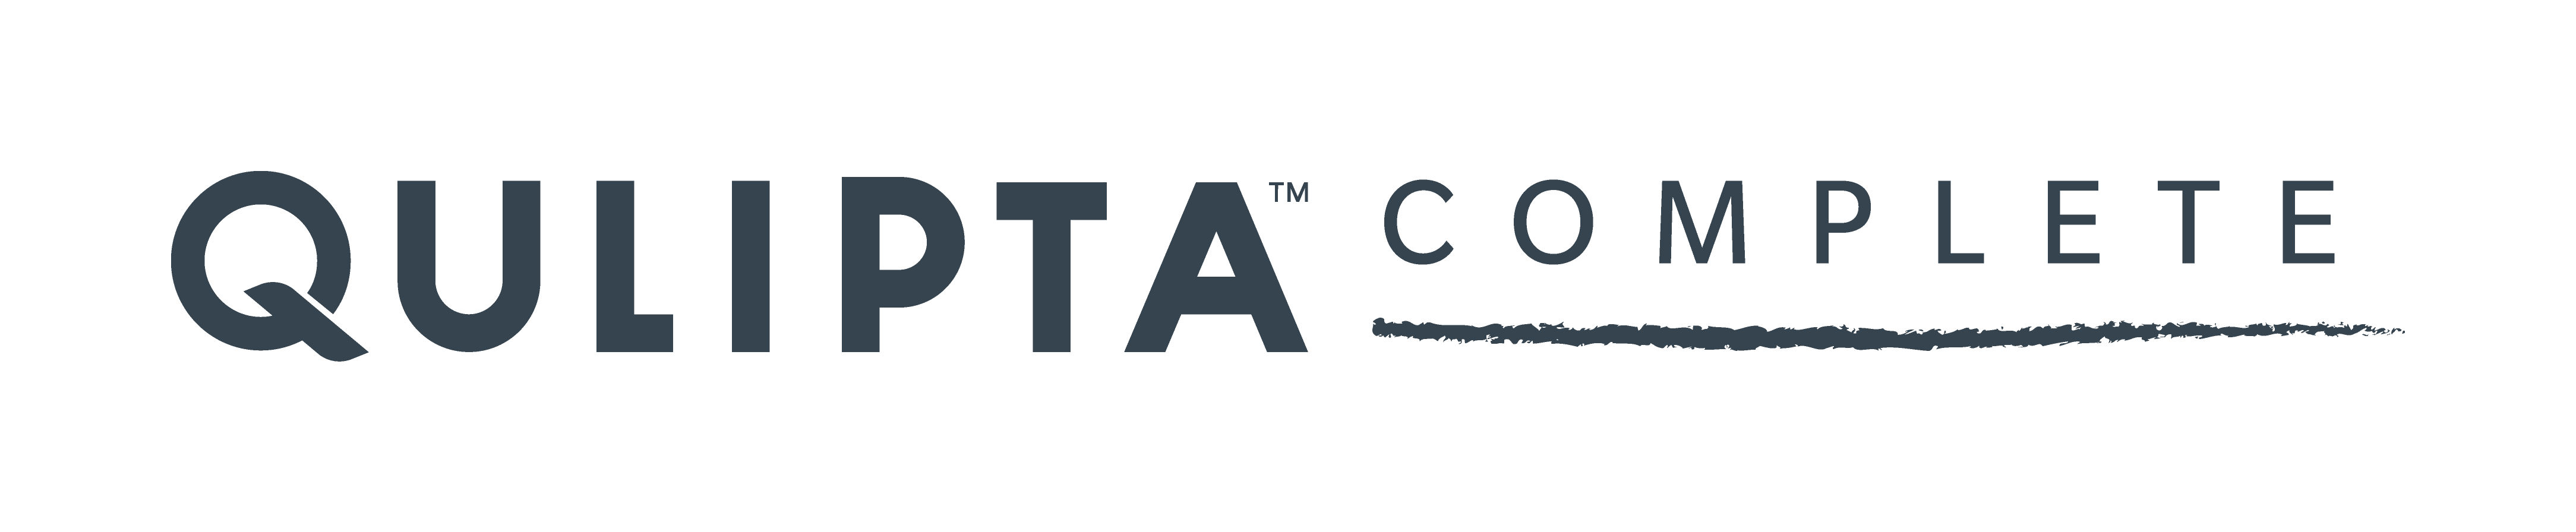 QULIPTA Complete logo